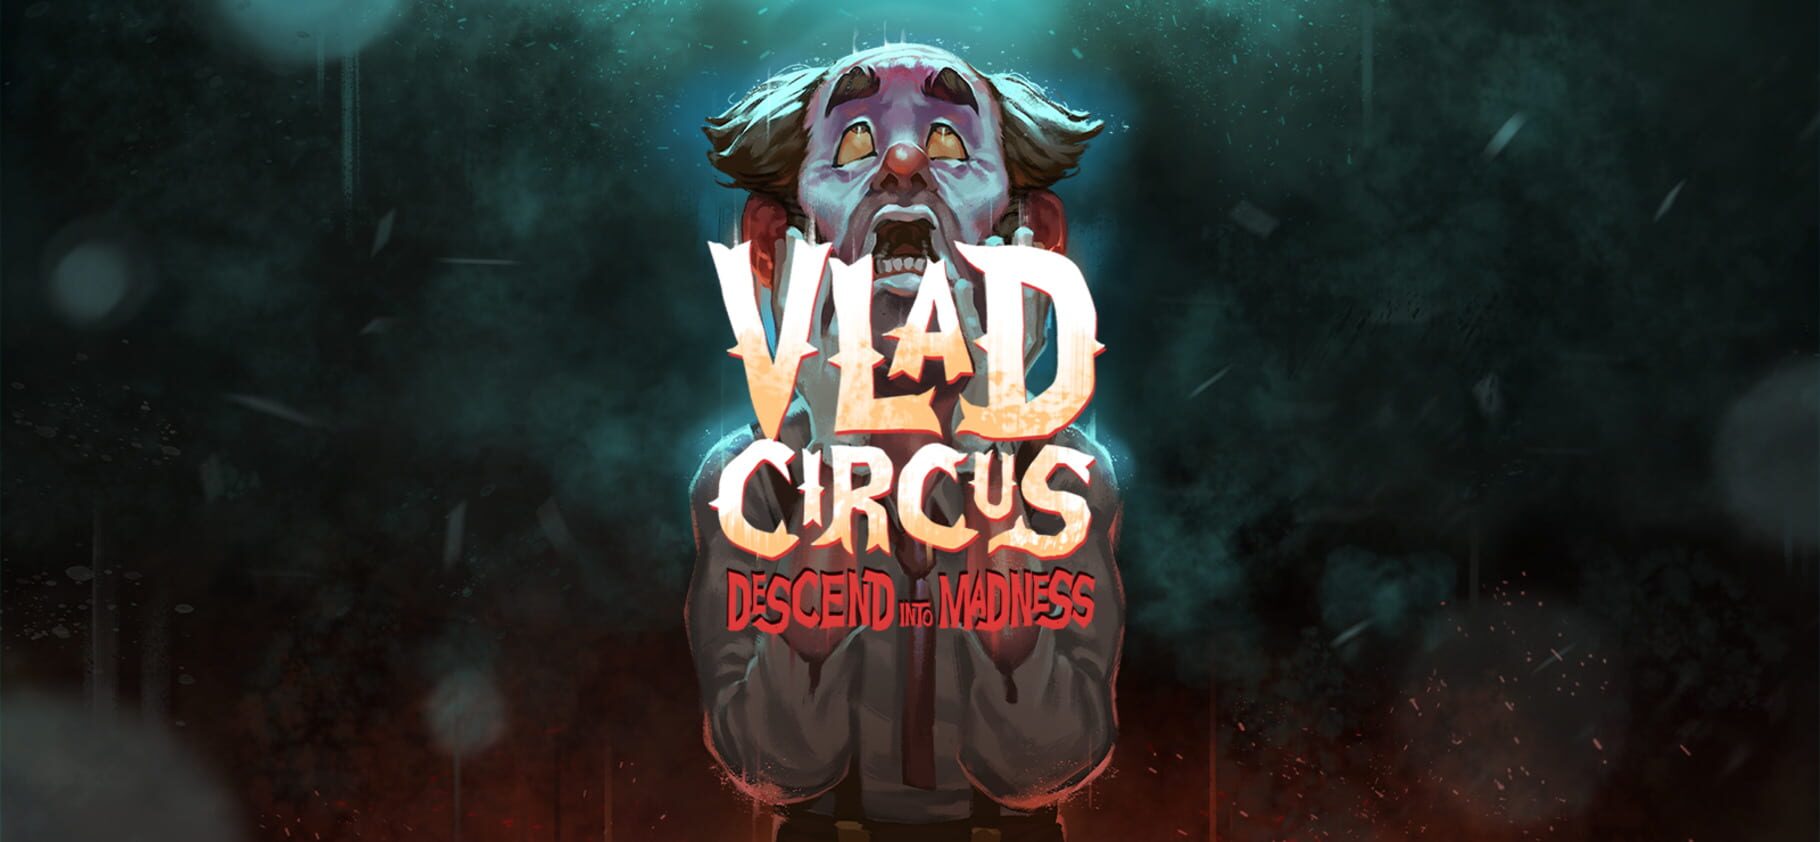 Arte - Vlad Circus: Descend Into Madness